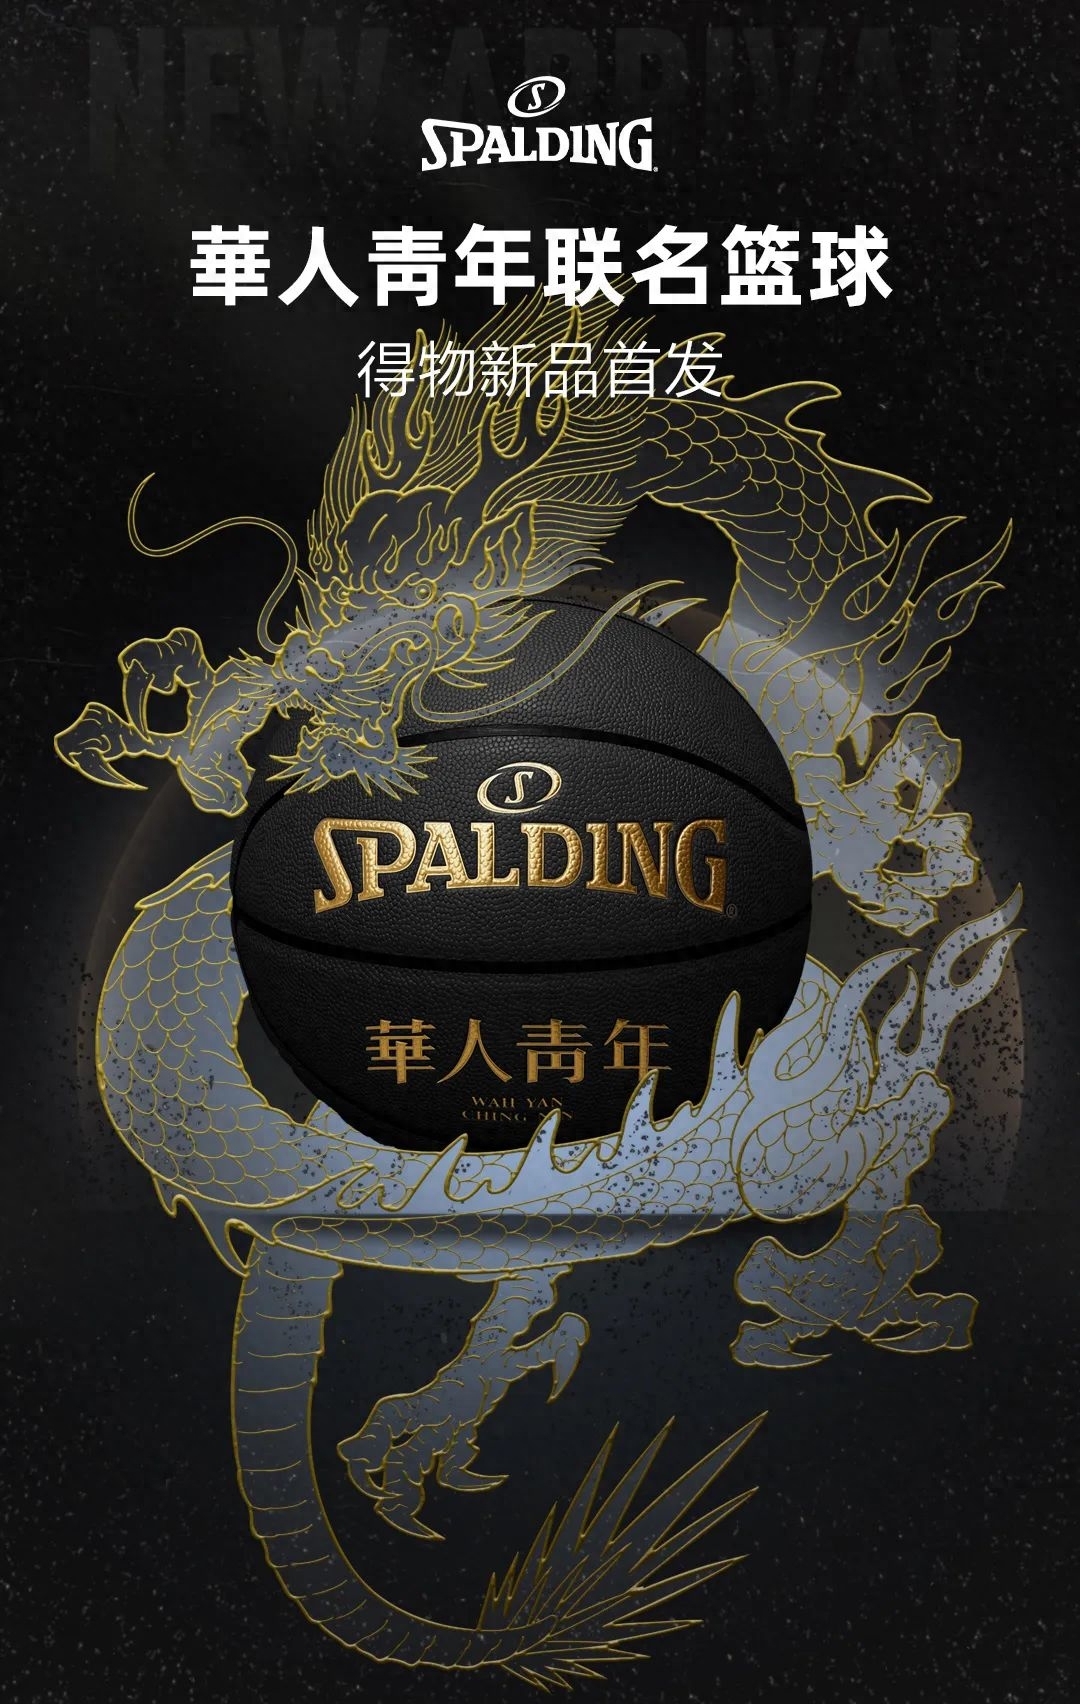 新品发售SPALDING 斯伯丁 x 华人青年限量篮球礼盒得物同步首发专注于为运动员打造专业运动与比赛装备的 SPALDING 斯伯丁，近日正式携手青年潮流品牌华人青年推出首款联名篮球设计，将